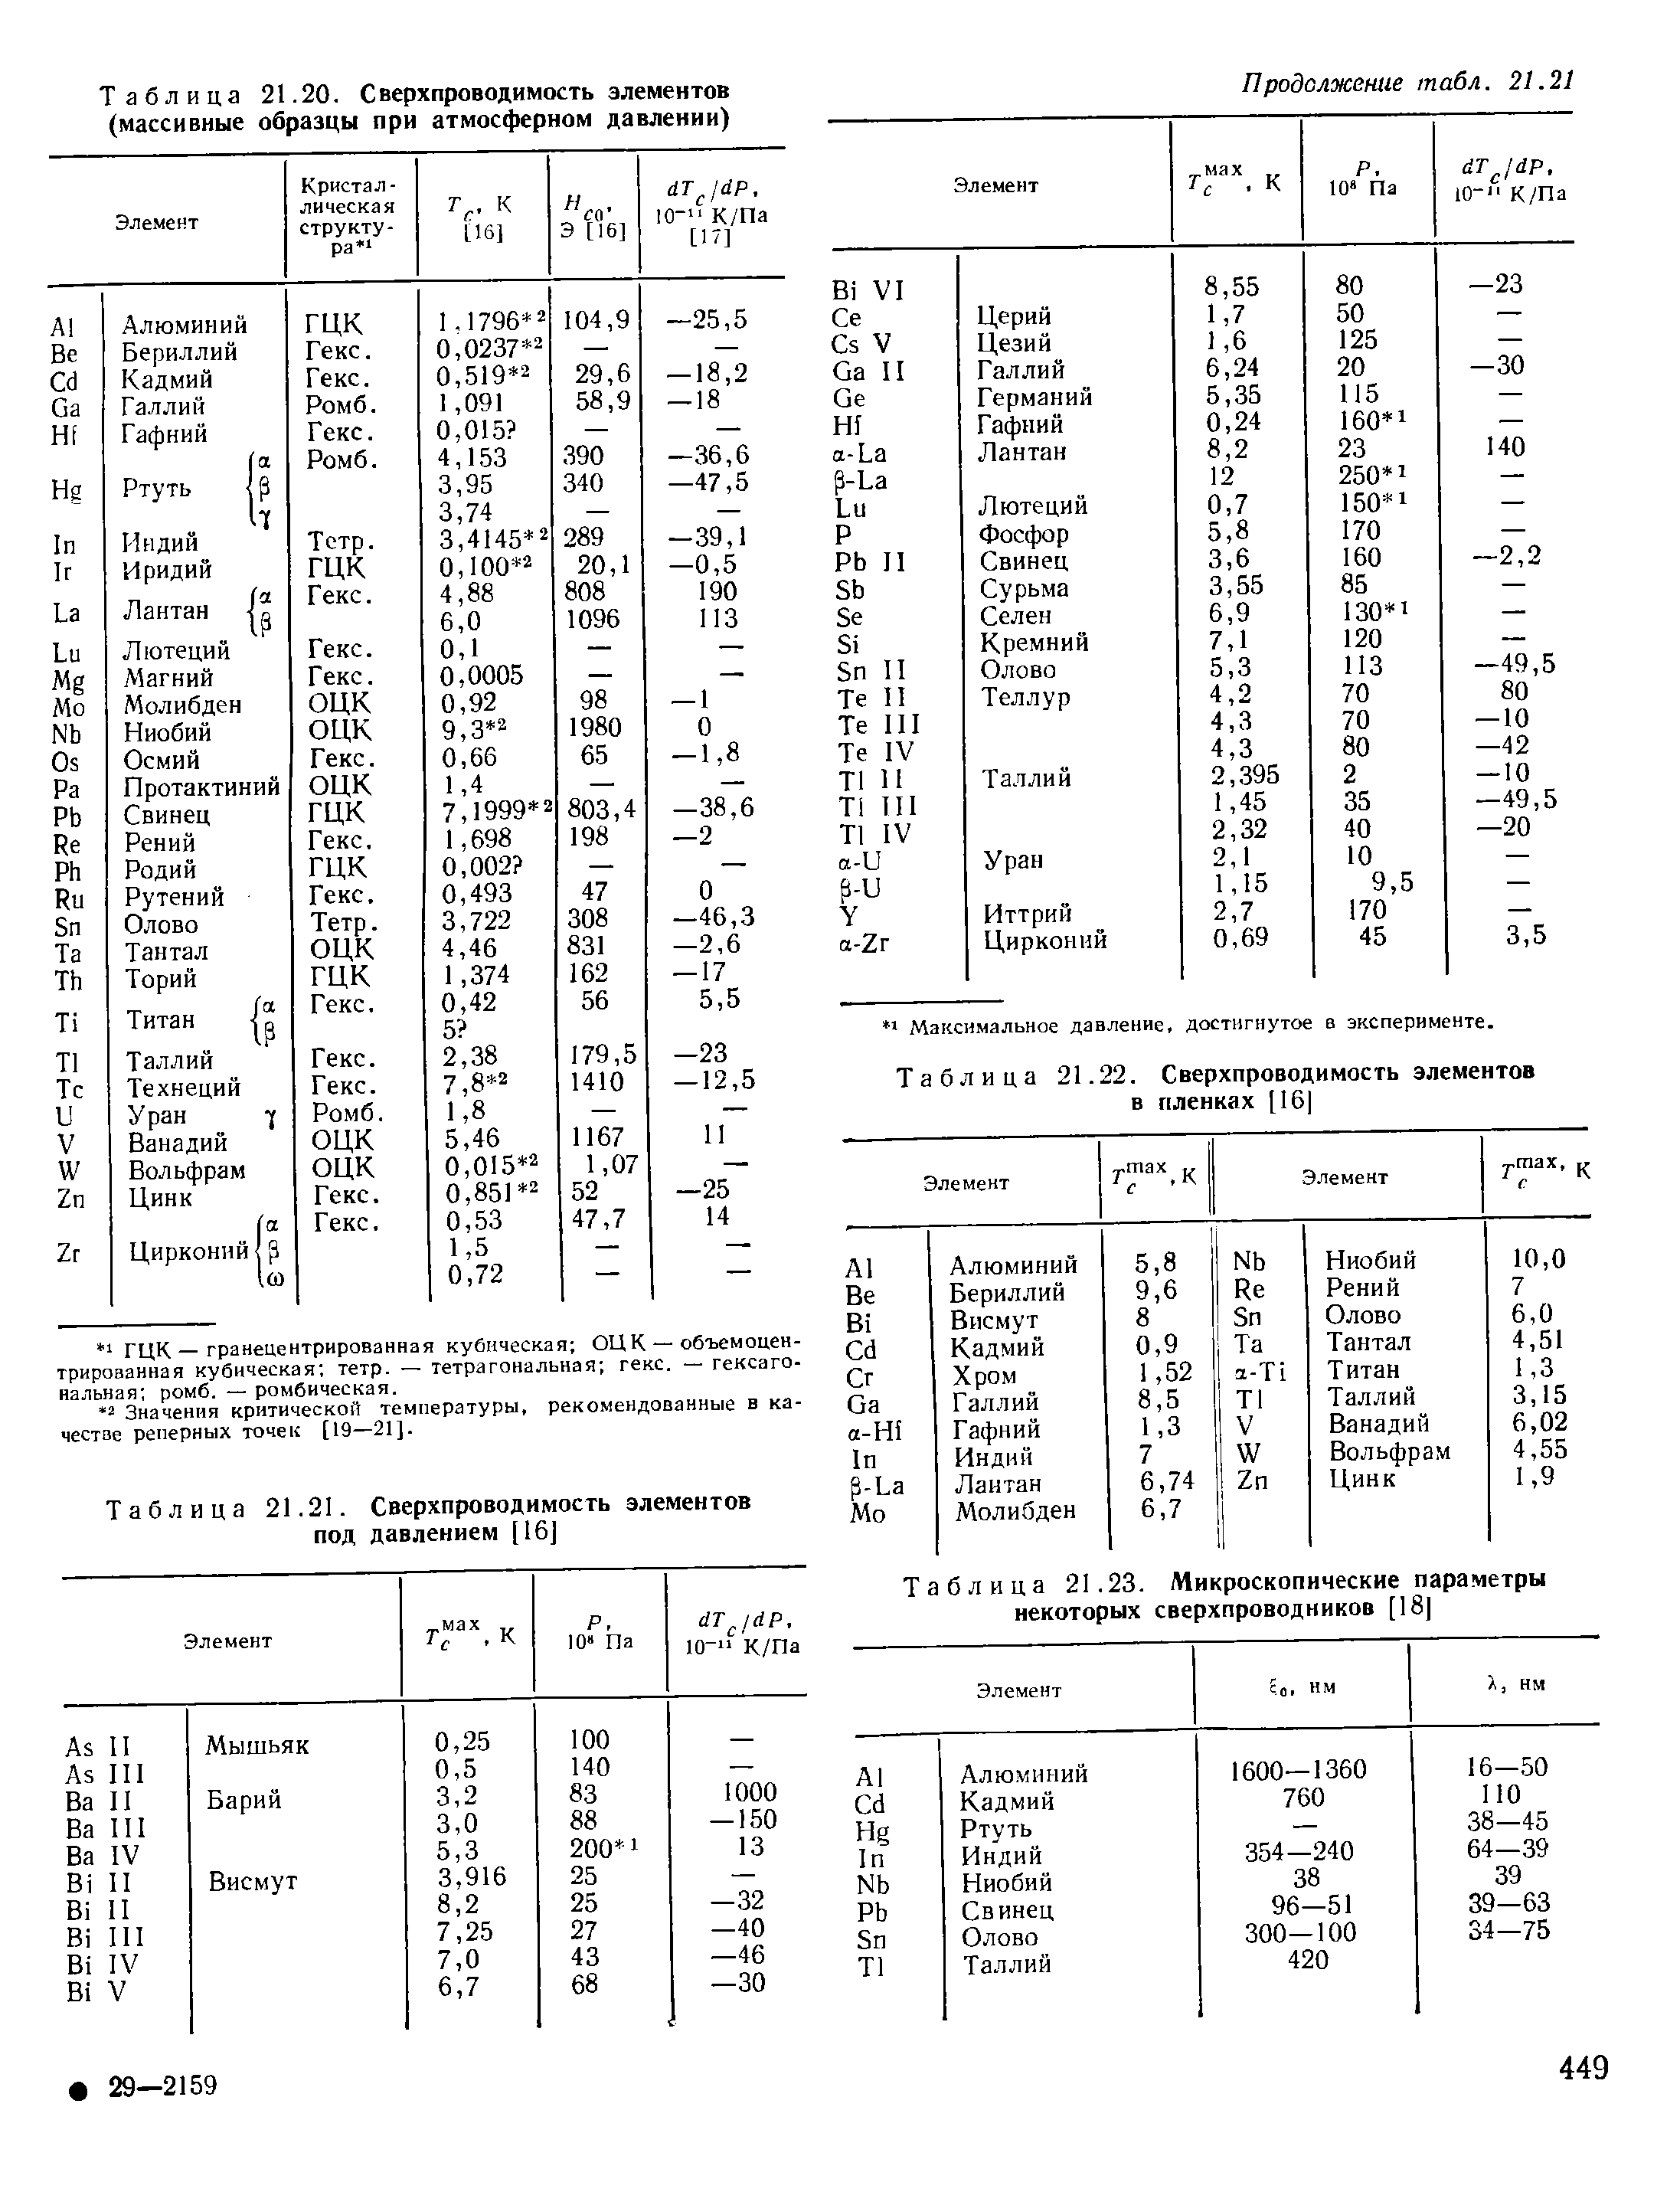 Таблица 21.22. Сверхпроводимость элементов в пленках [16 
